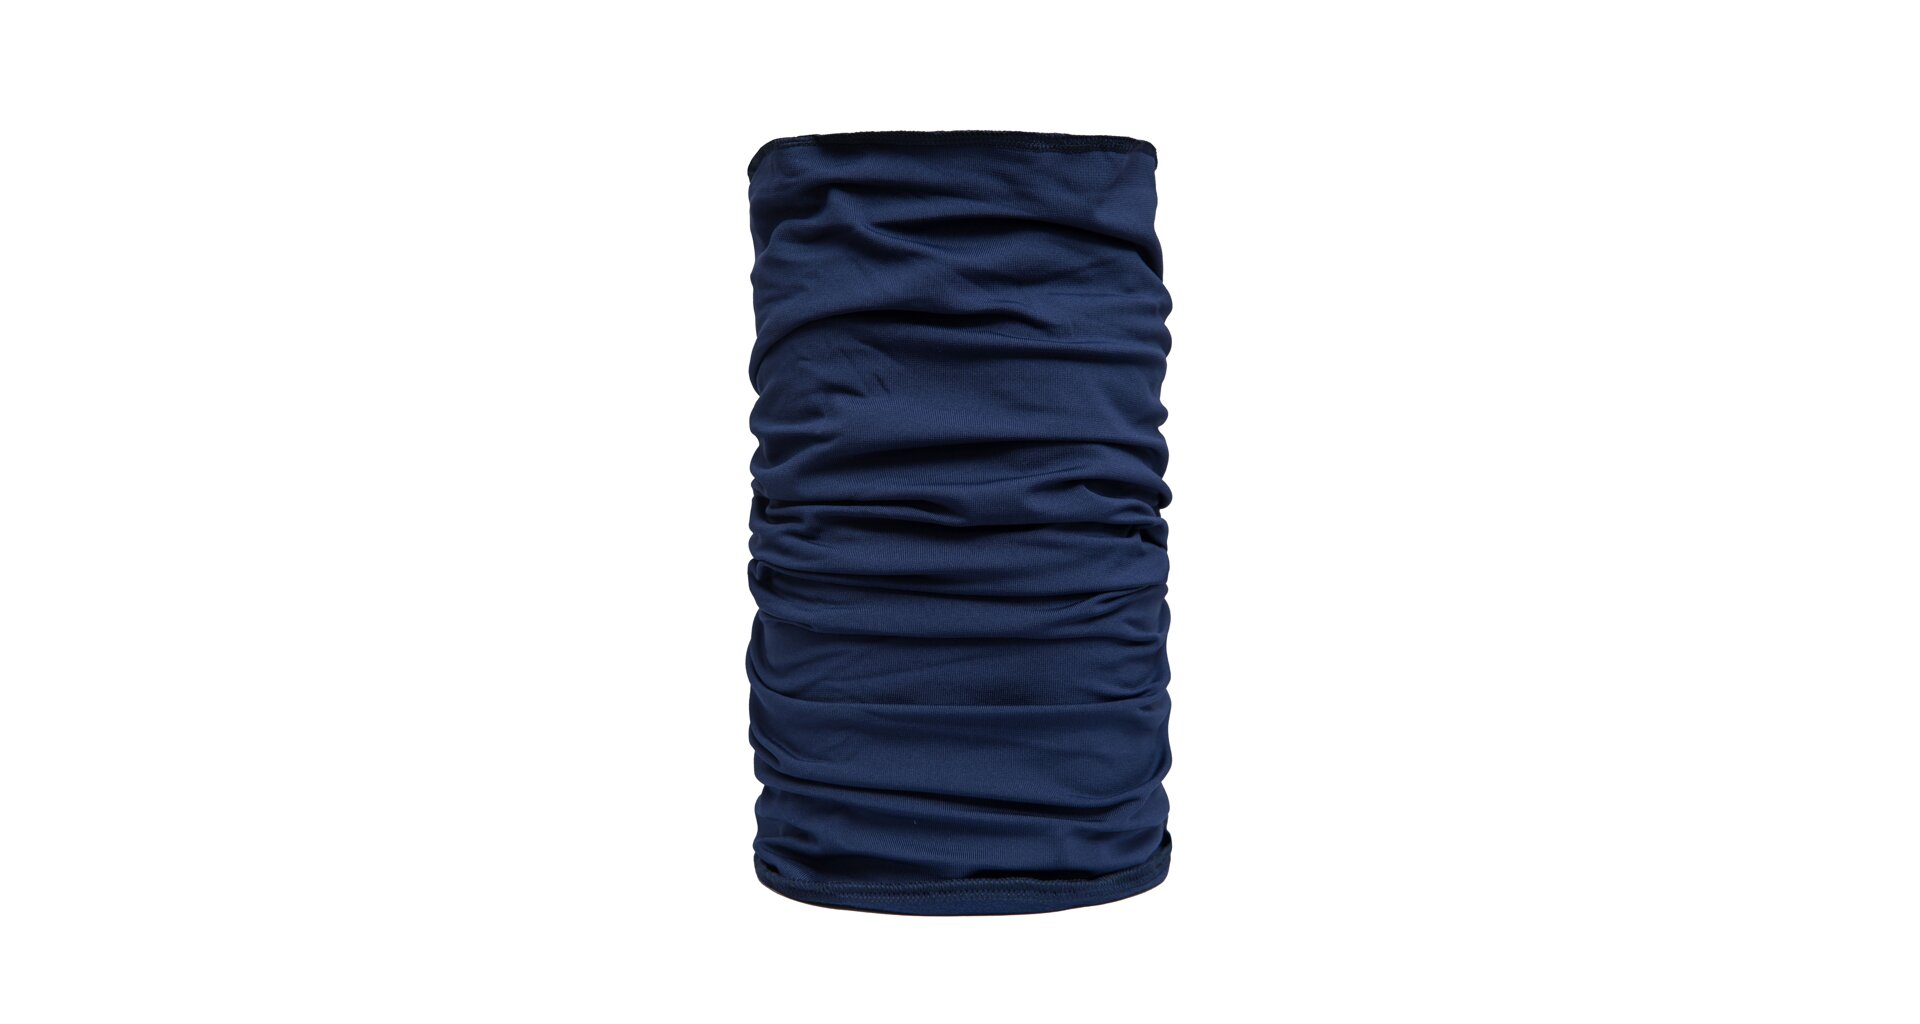 SENSOR TUBE COOLMAX THERMO šátek multifunkční deep blue